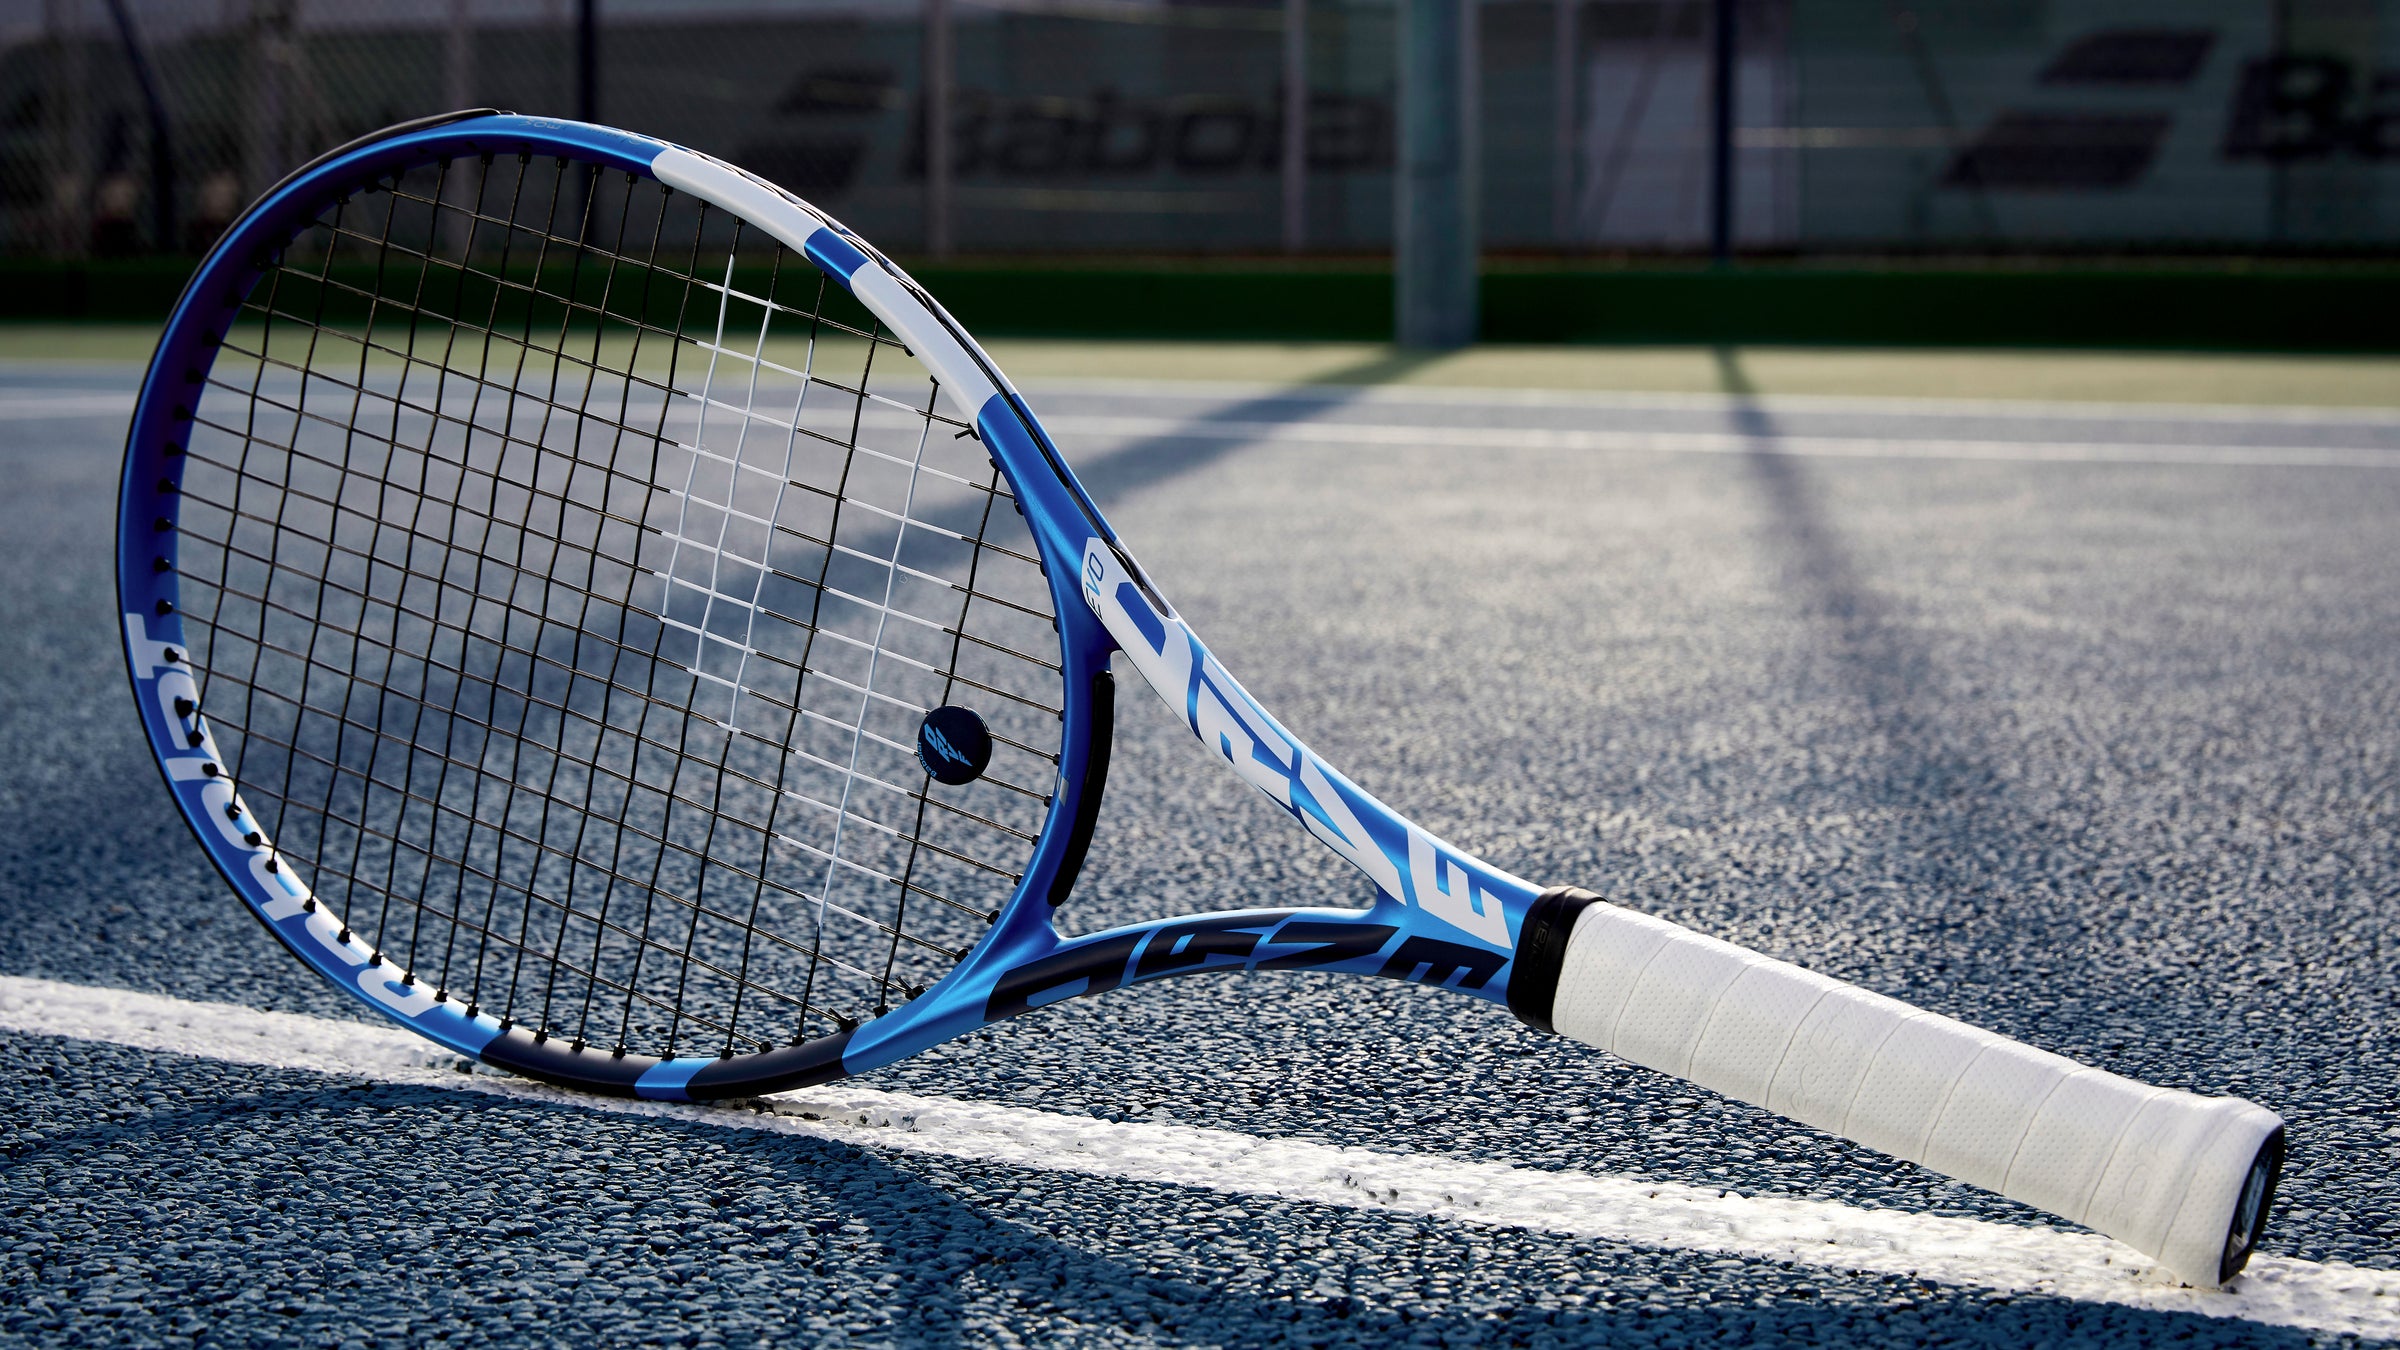 Babolat tennis rackets